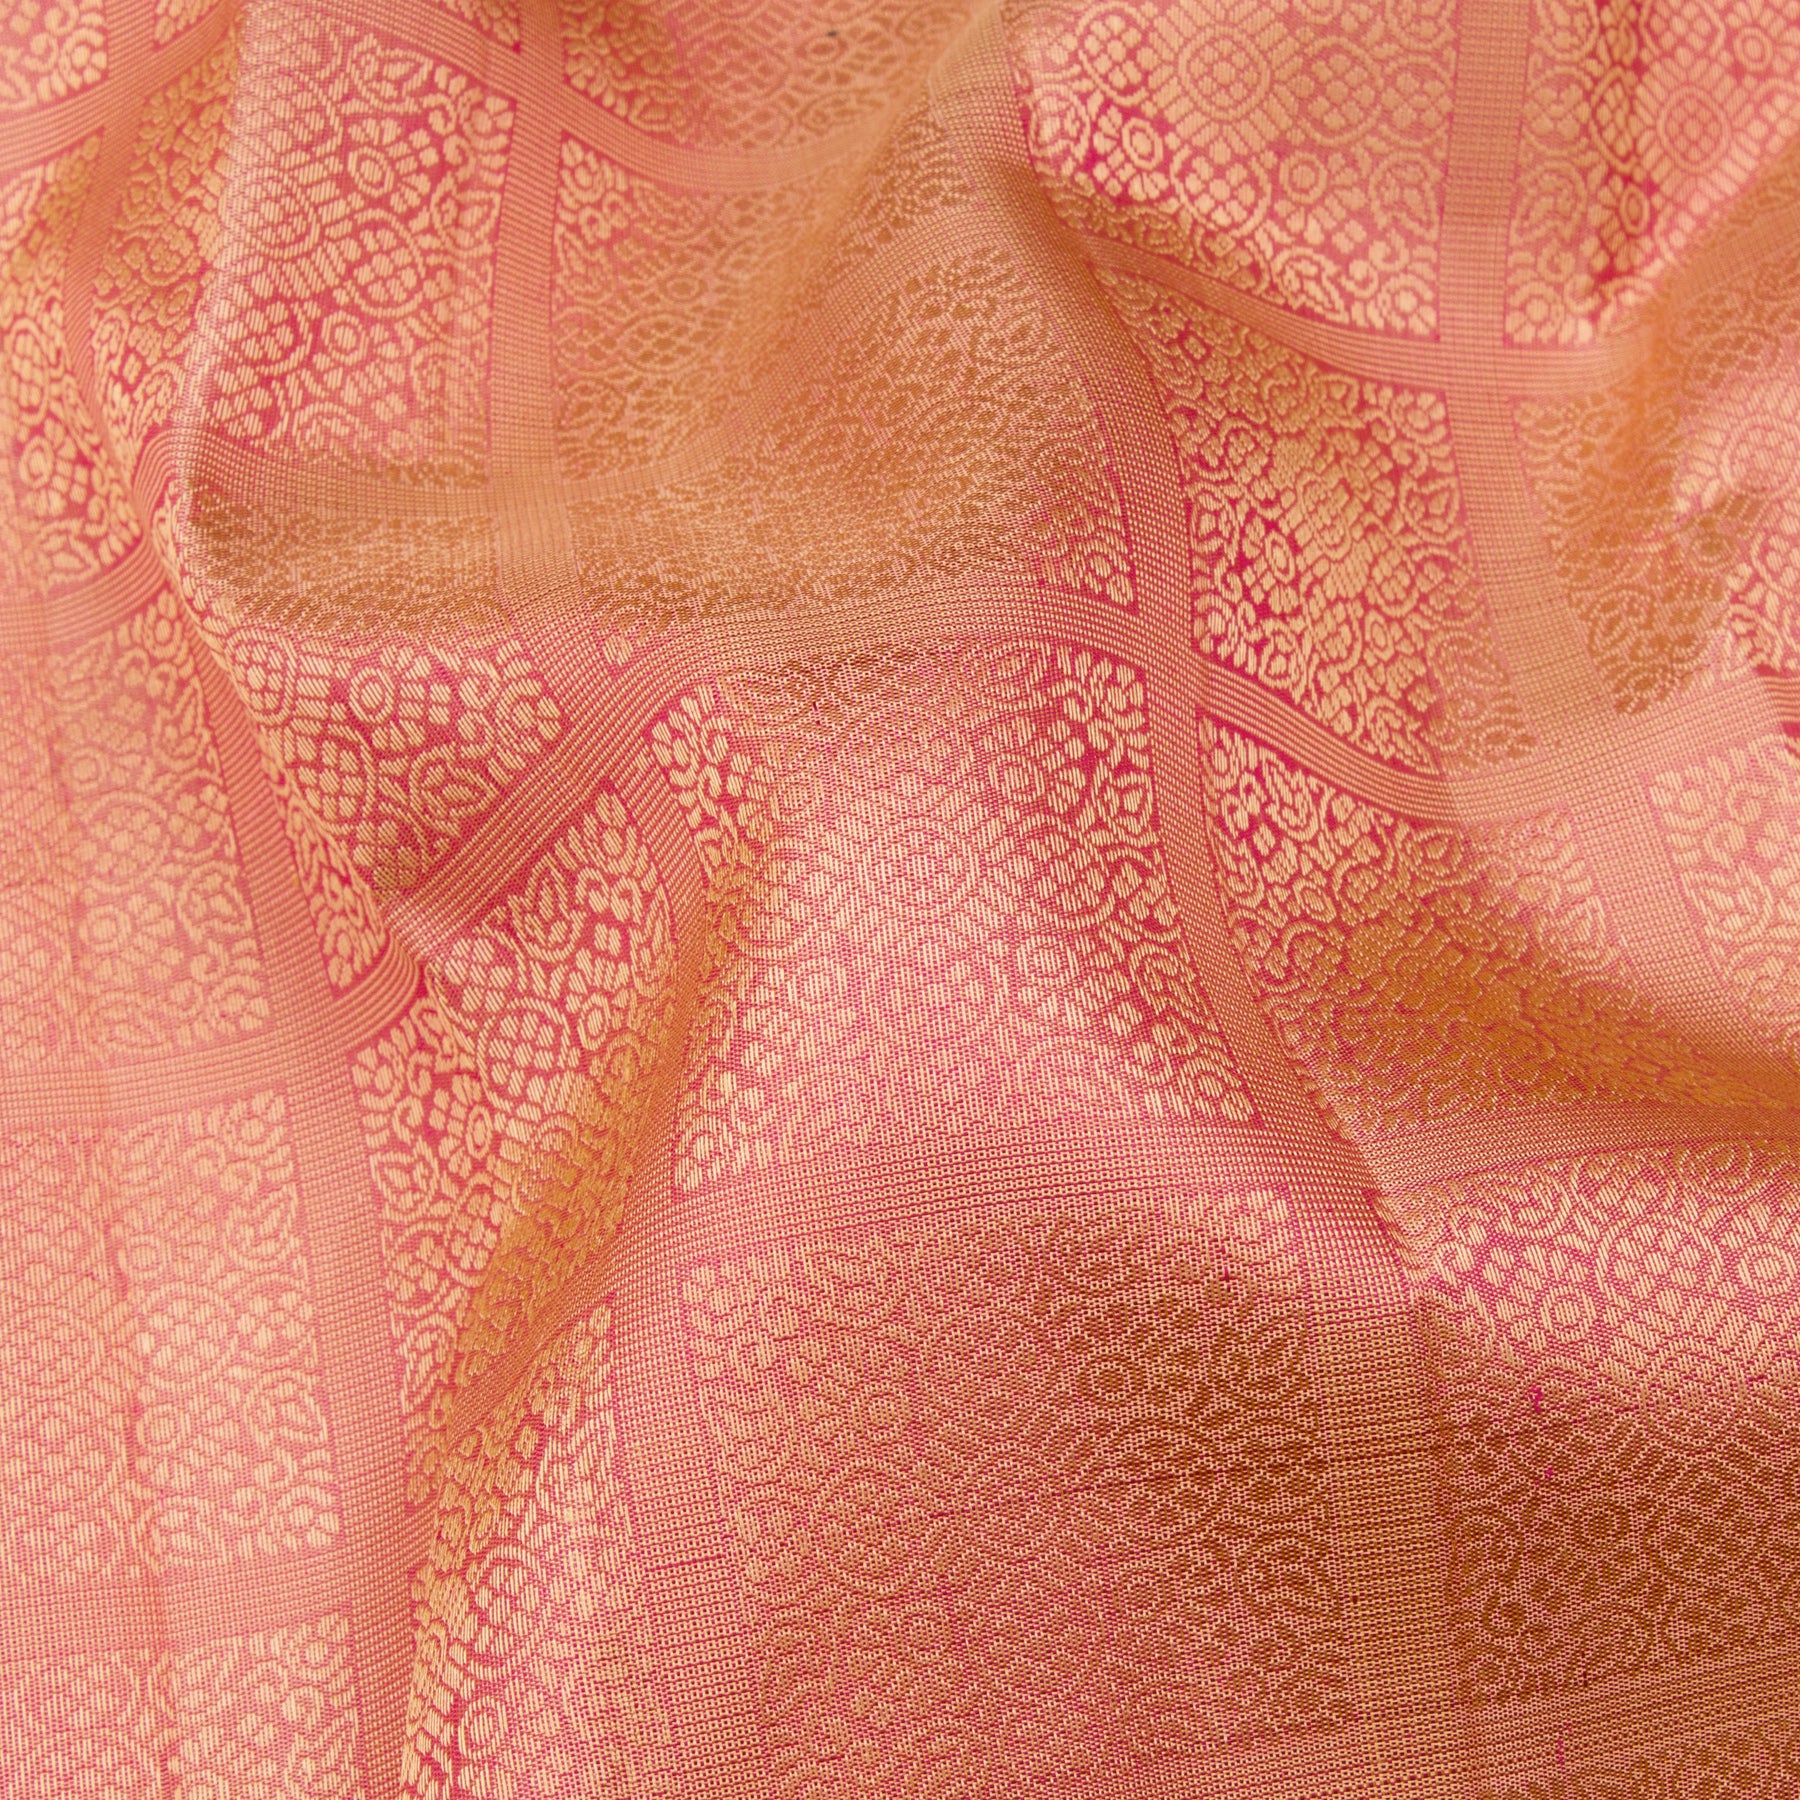 Kanakavalli Kanjivaram Silk Sari 23-599-HS001-13870 - Fabric View